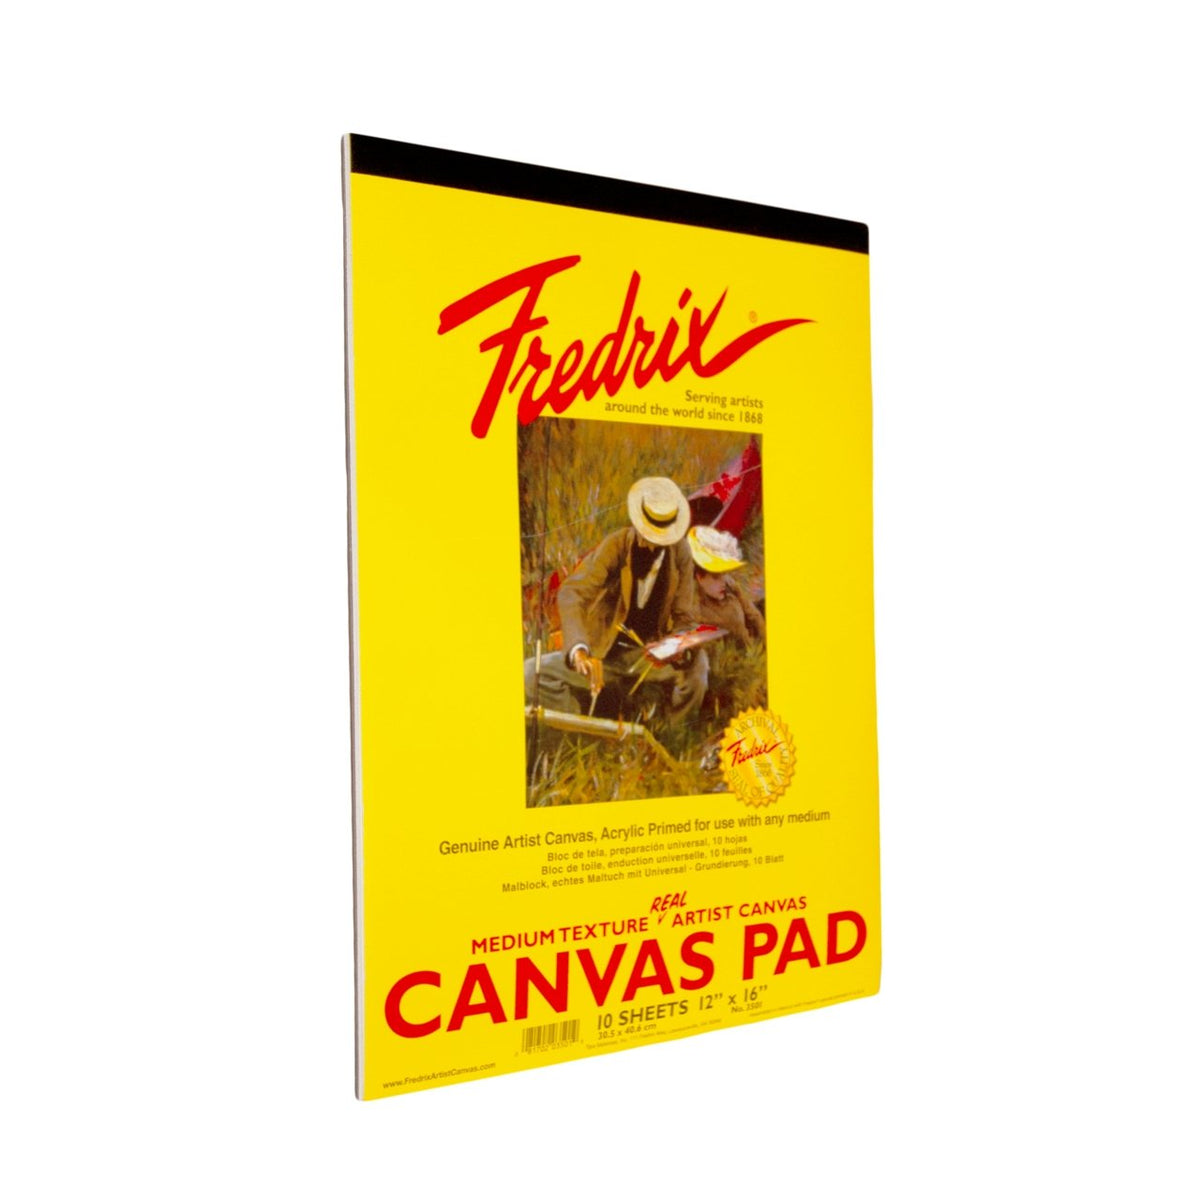 Fredrix Real Canvas Pad 12X16 - merriartist.com